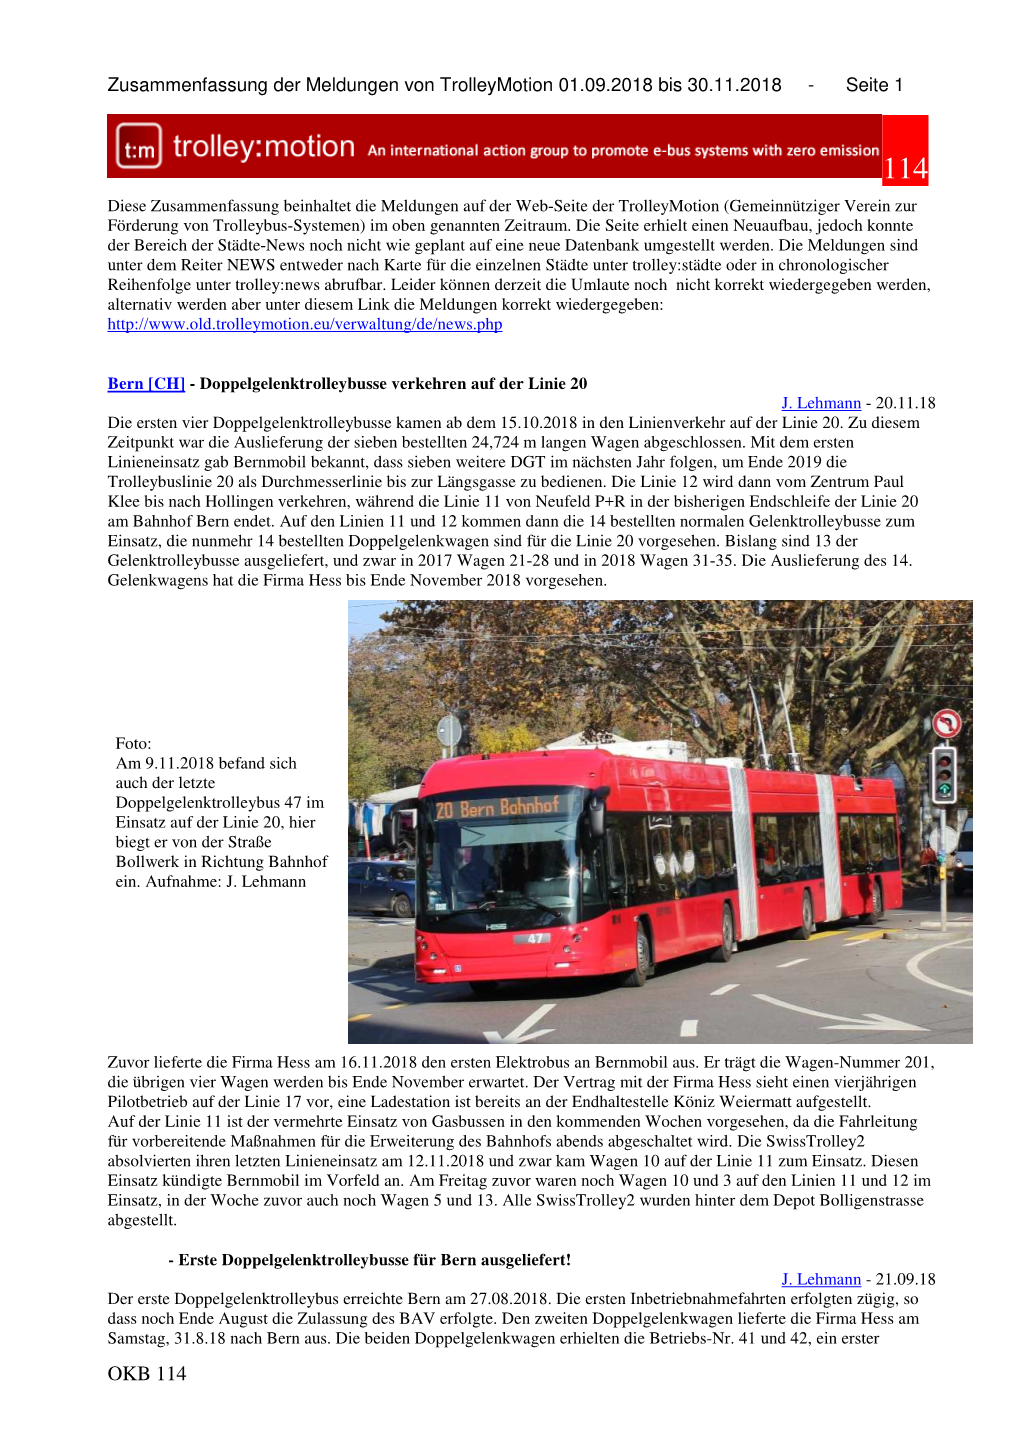 OKB 114 Zusammenfassung Der Meldungen Von Trolleymotion 01.09.2018 Bis 30.11.2018 - Seite 2